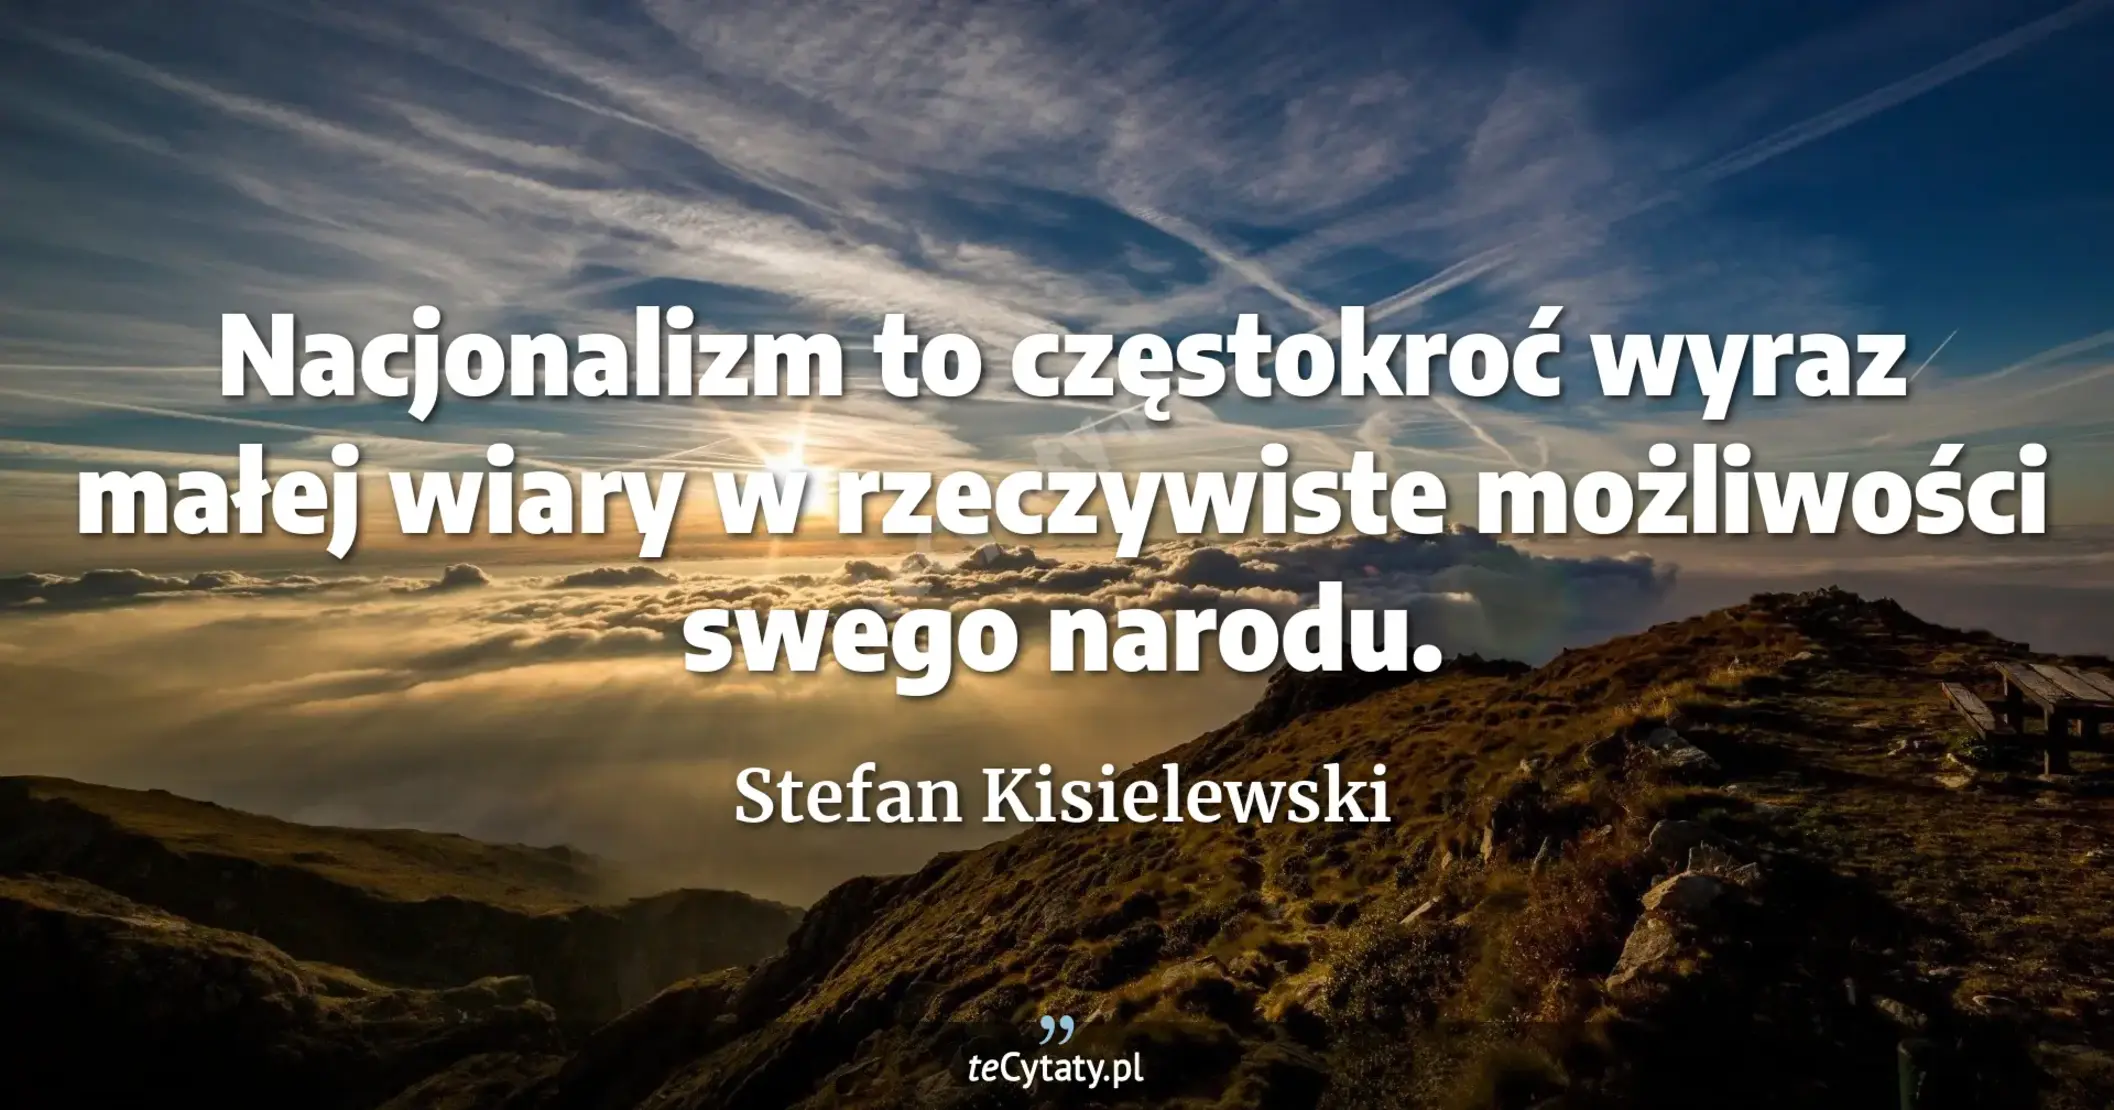 Nacjonalizm to częstokroć wyraz małej wiary w rzeczywiste możliwości swego narodu. - Stefan Kisielewski